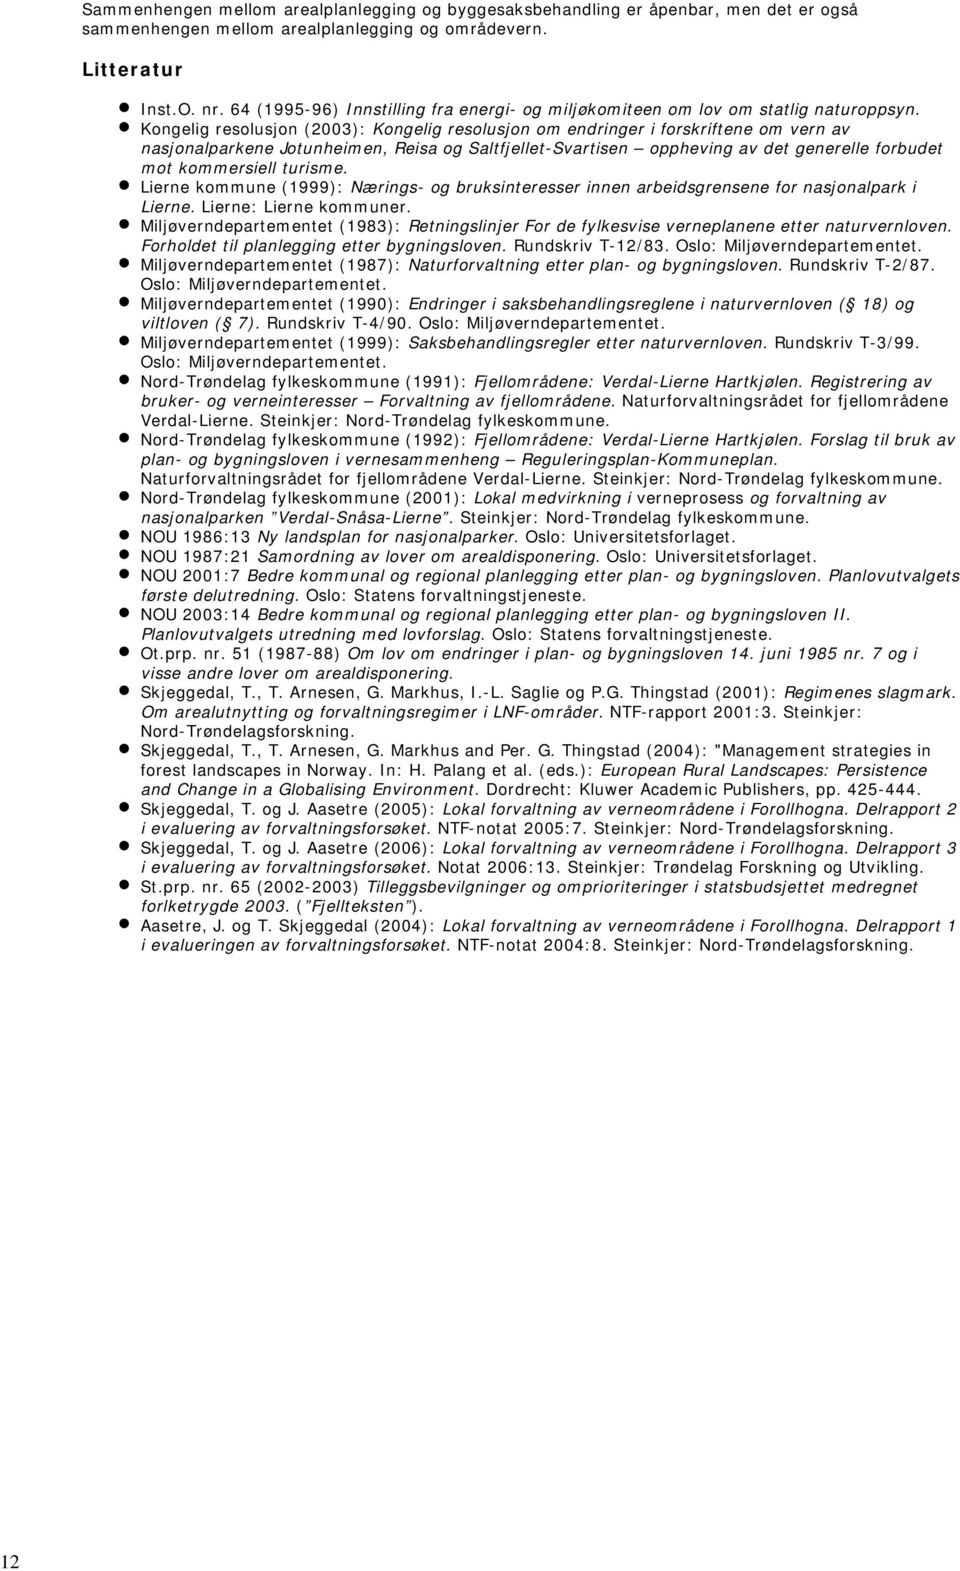 Kongelig resolusjon (2003): Kongelig resolusjon om endringer i forskriftene om vern av nasjonalparkene Jotunheimen, Reisa og Saltfjellet-Svartisen oppheving av det generelle forbudet mot kommersiell